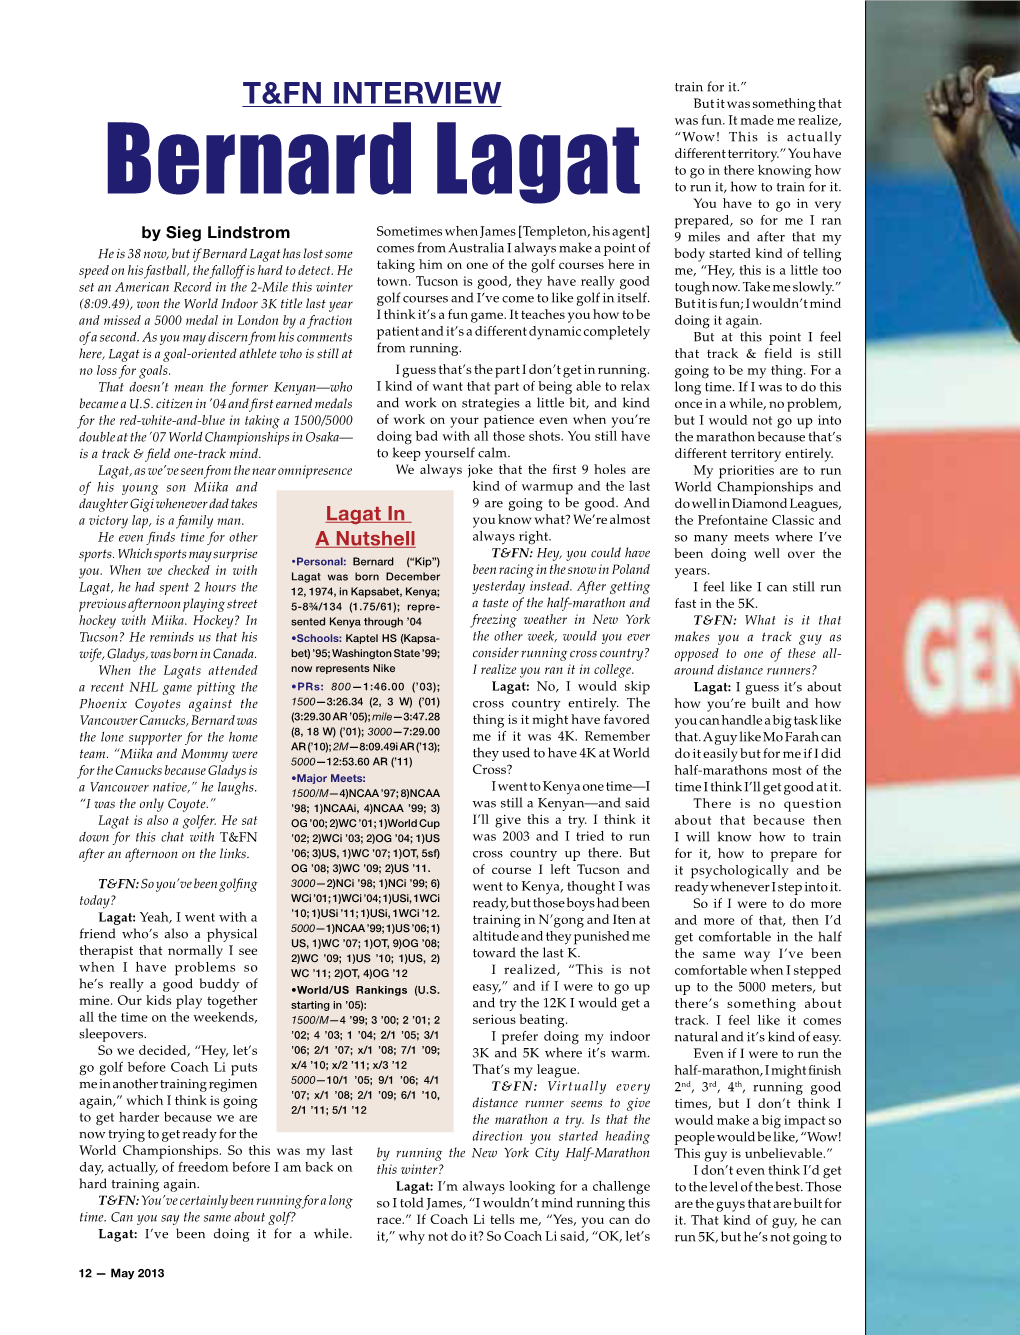 Bernard Lagat